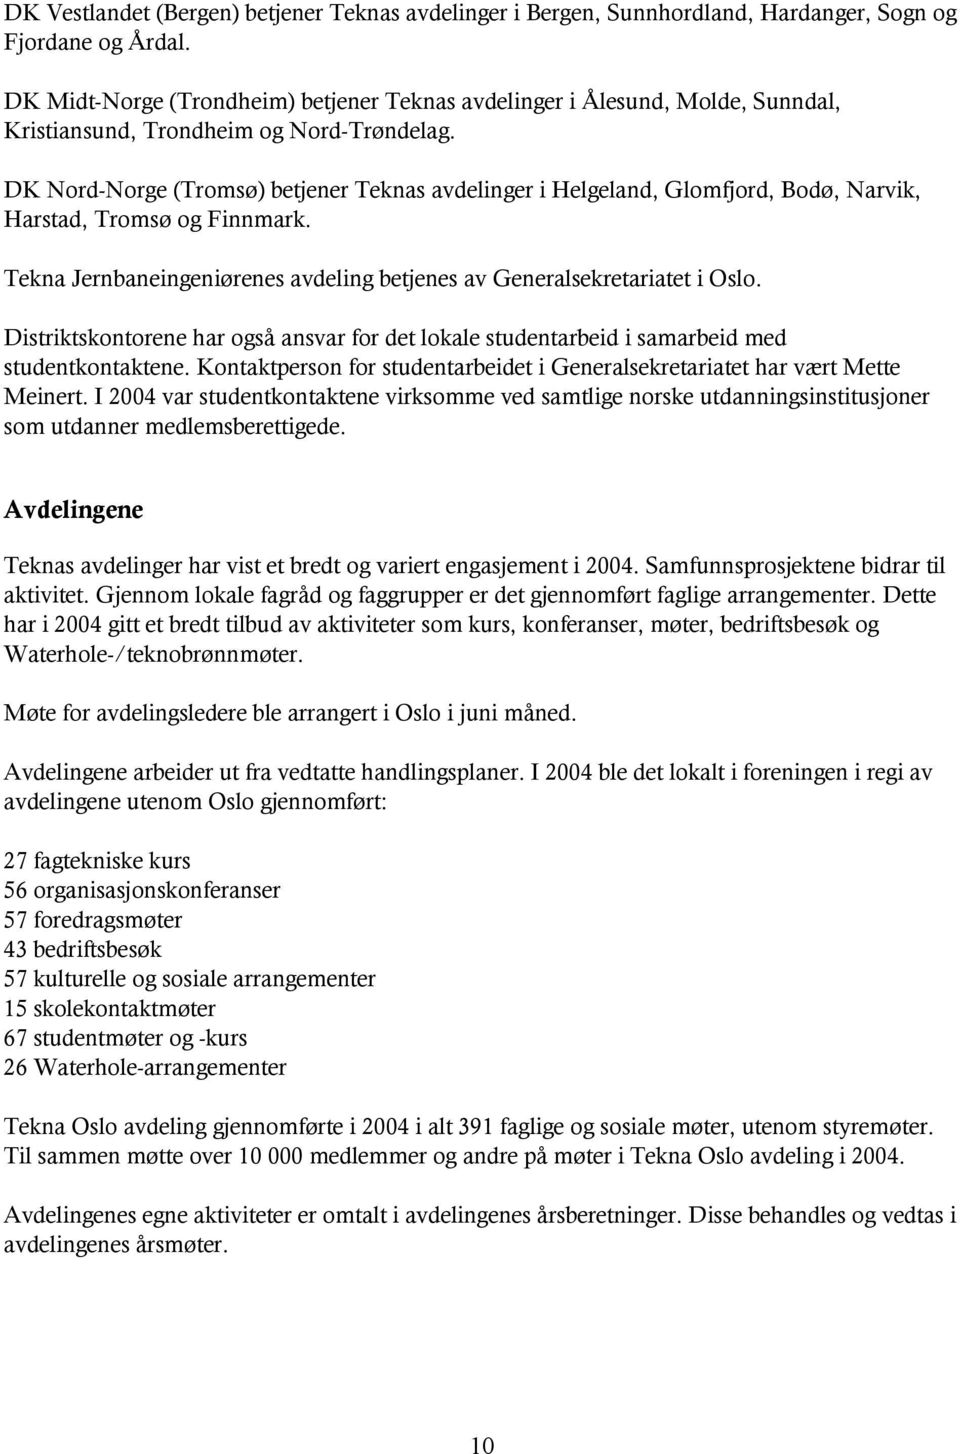 DK Nord-Norge (Tromsø) betjener Teknas avdelinger i Helgeland, Glomfjord, Bodø, Narvik, Harstad, Tromsø og Finnmark. Tekna Jernbaneingeniørenes avdeling betjenes av Generalsekretariatet i Oslo.